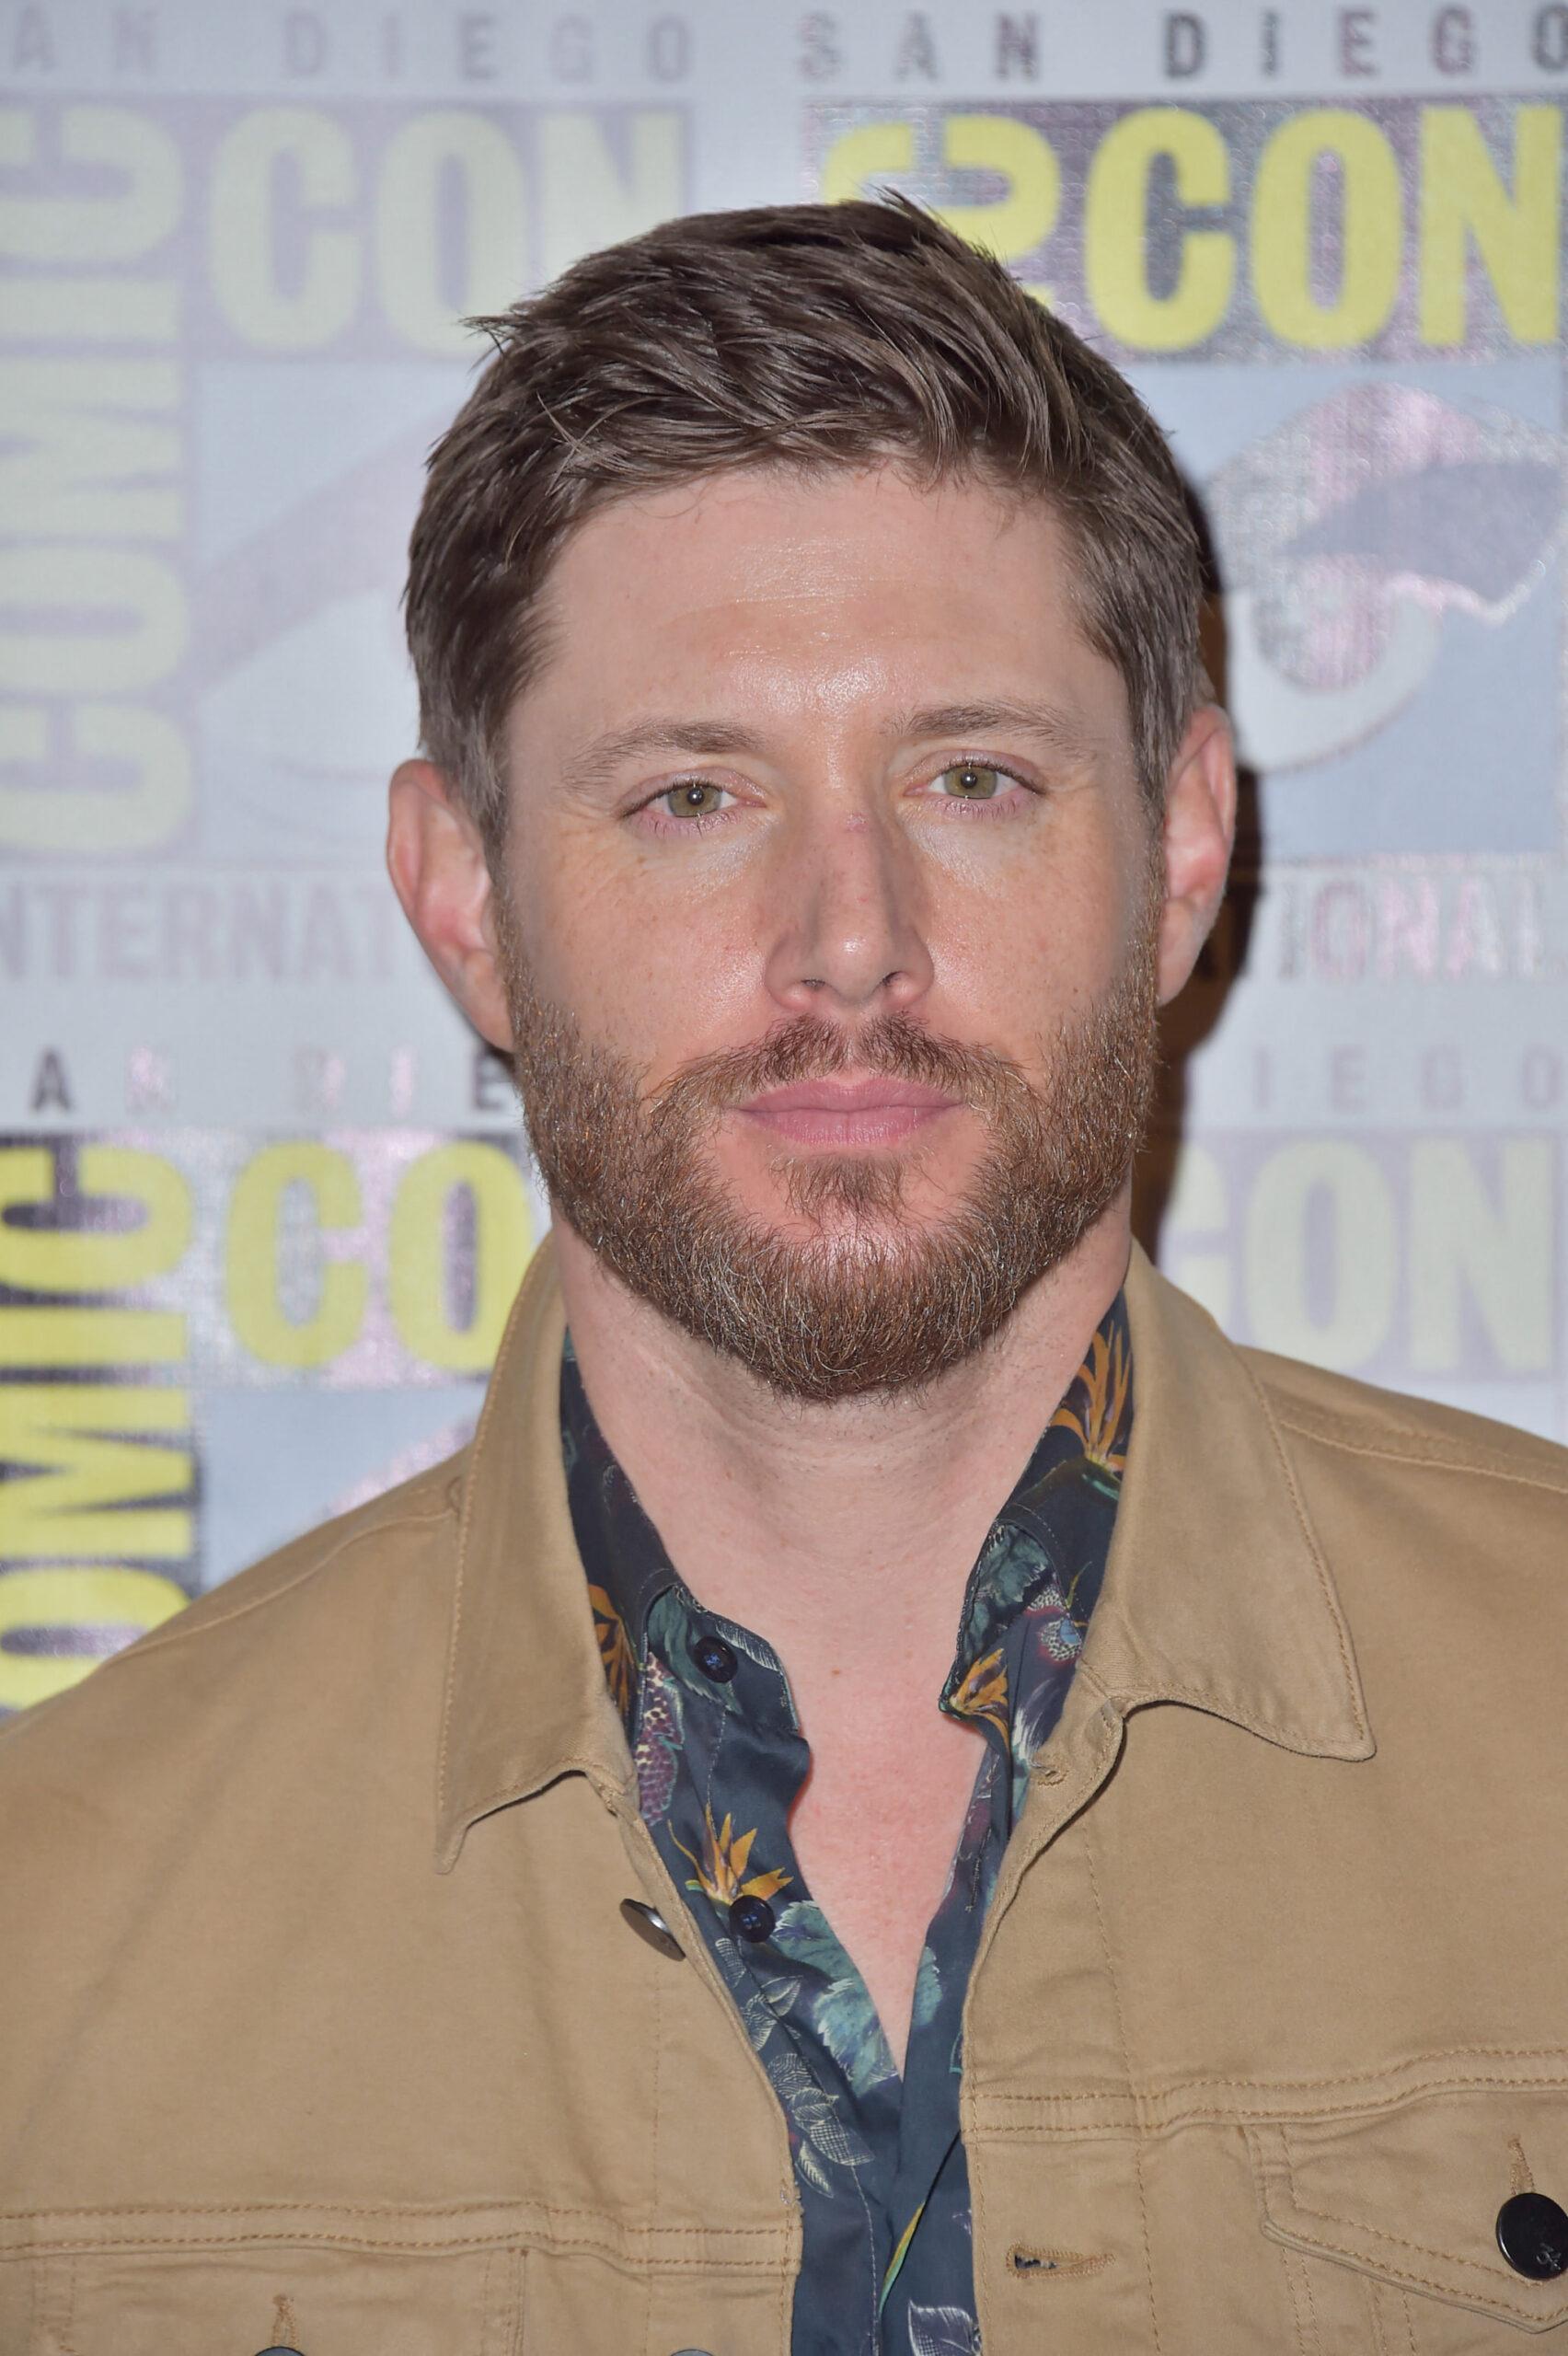 Jensen Ackles at Supernatural Photo Call at Comic-Con